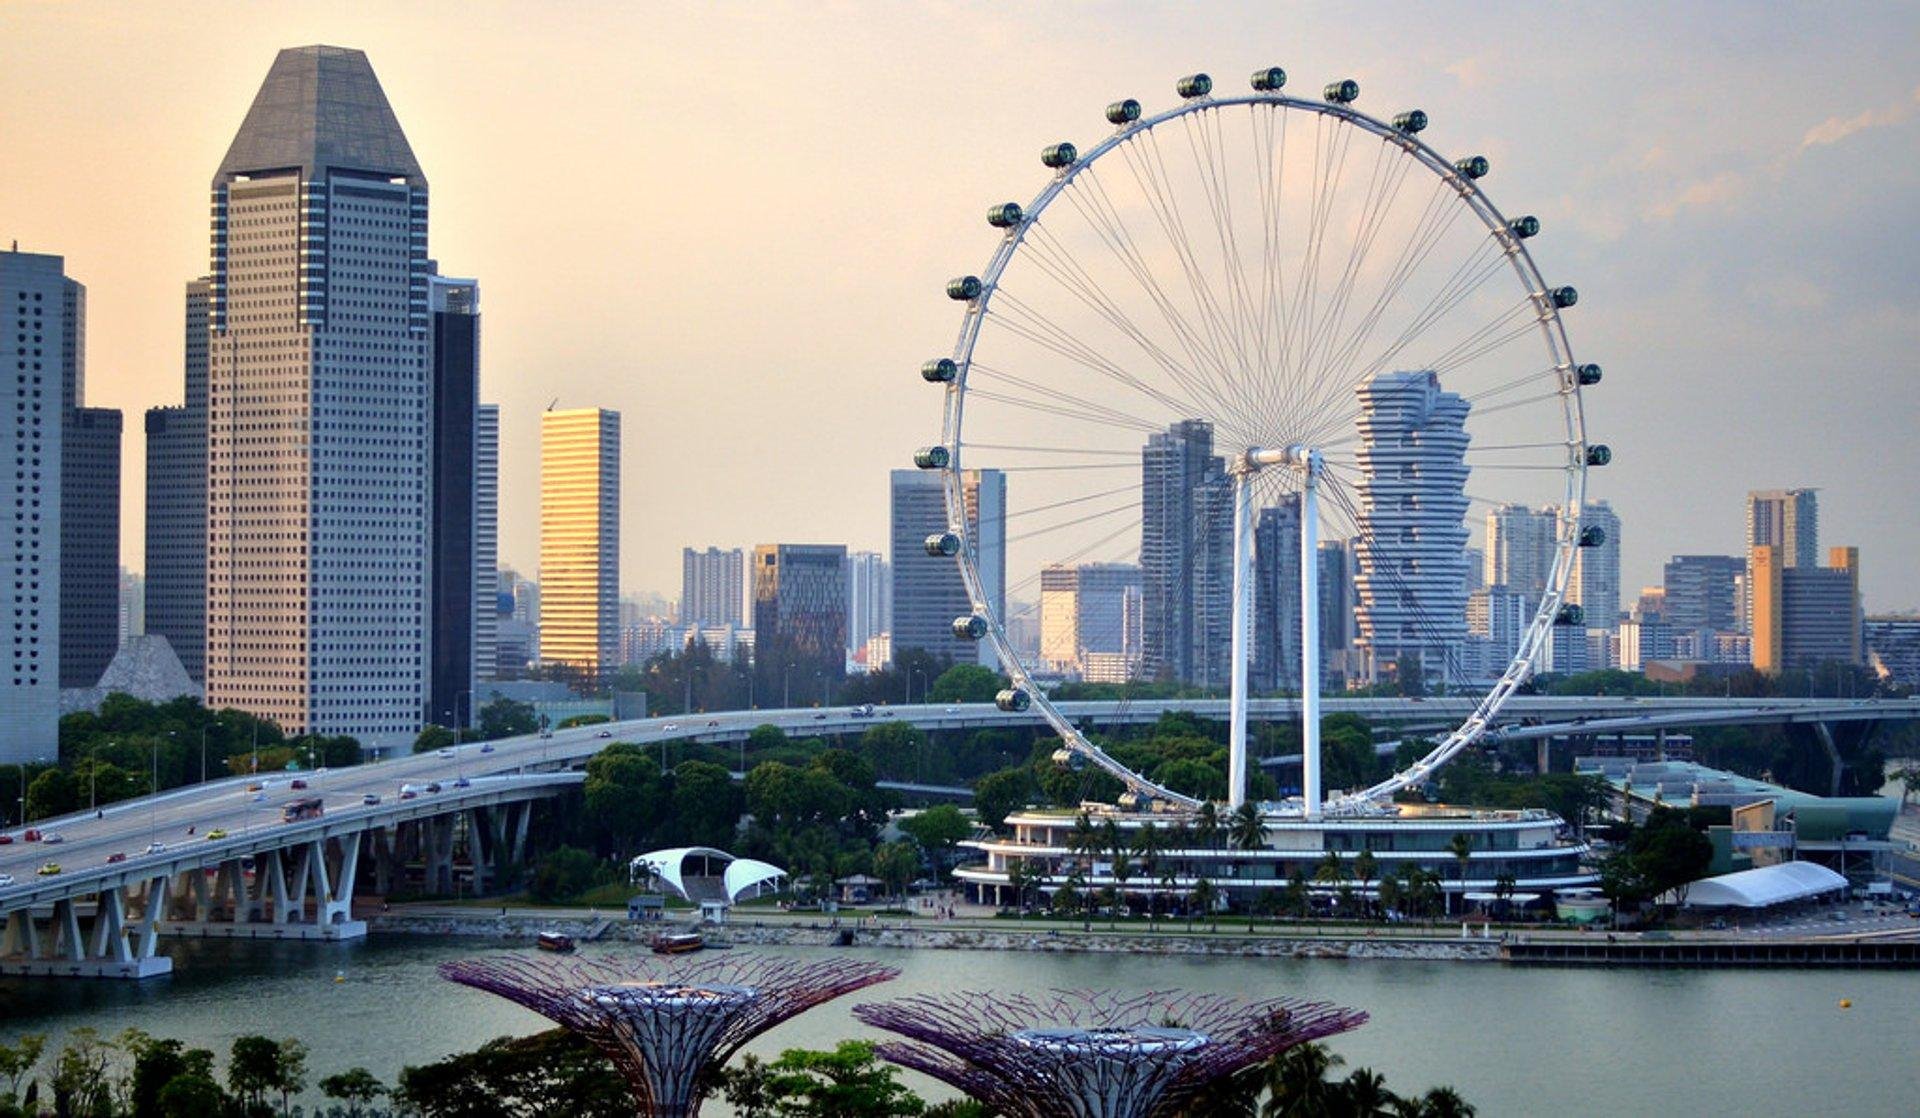 سنغافورة   سنغافوره   أماكن سياحية   سياحة   وجهات   سفر   رحلات طيران